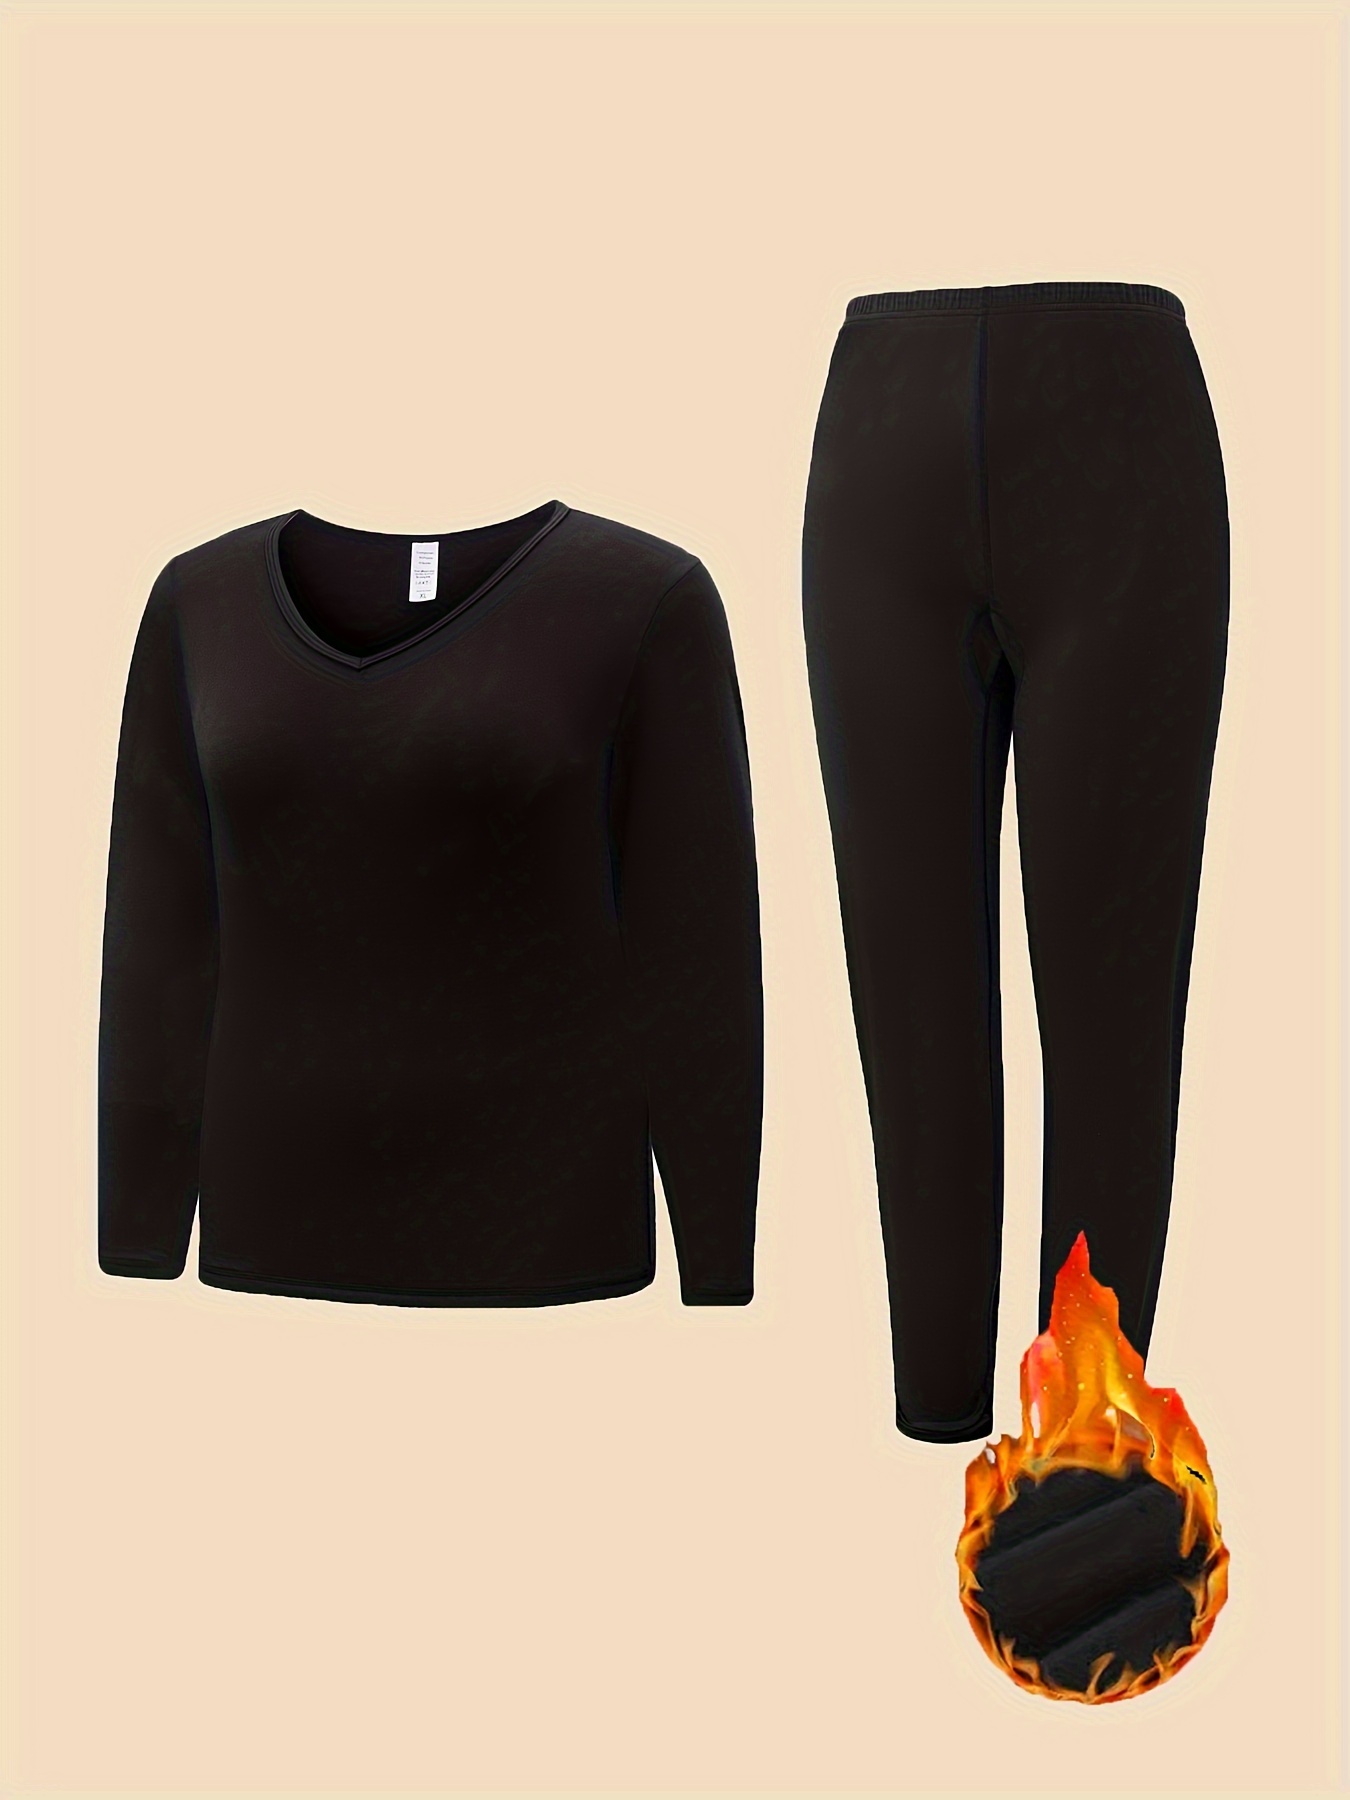 Ladies Thermal Leggings Fleece Lined Black 4.9 TOG Womens Winter Warm 1  Pair